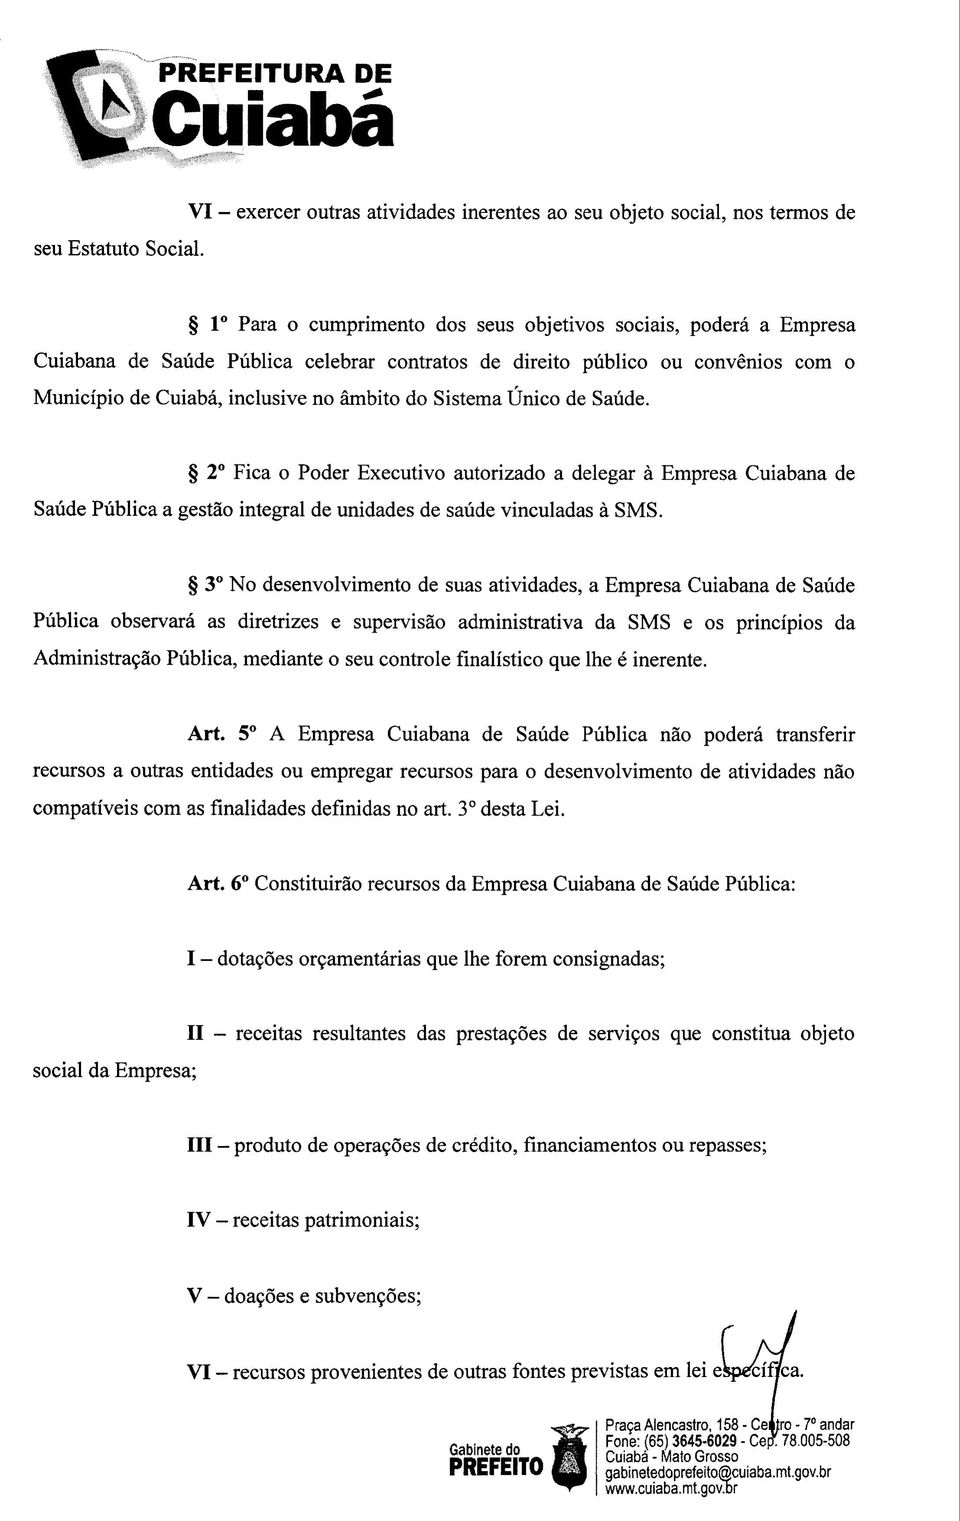 público ou convénios com o Município de Cuiabá, inclusive no âmbito do Sistema Único de Saúde.